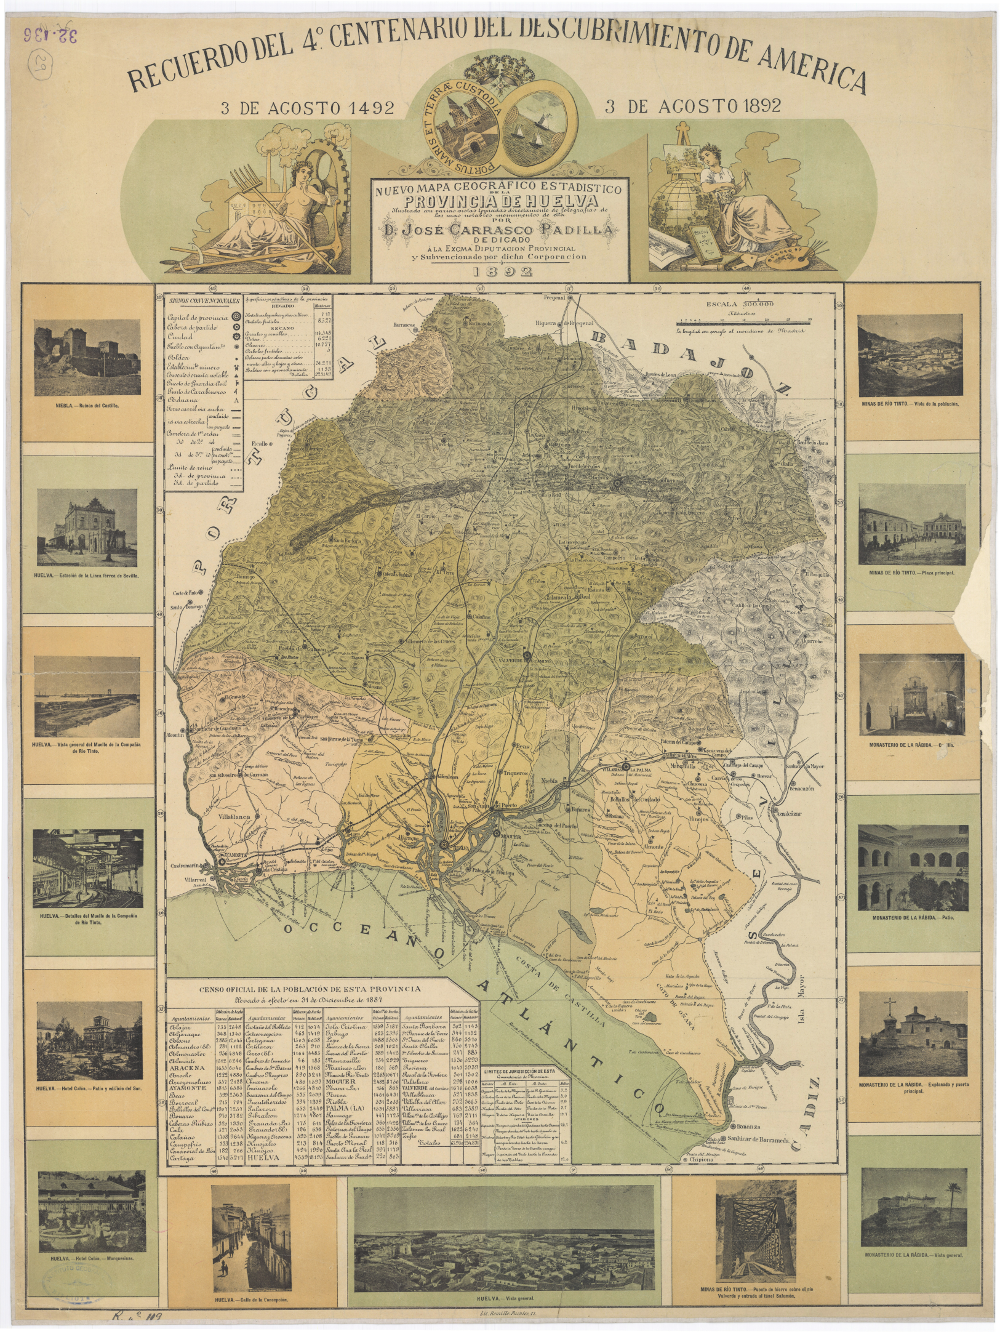 Nuevo Mapa Geográfico Estadístico de la Provincia de Huelva. José Carrasco Padilla, 1892. Instituto Geográfico Nacional